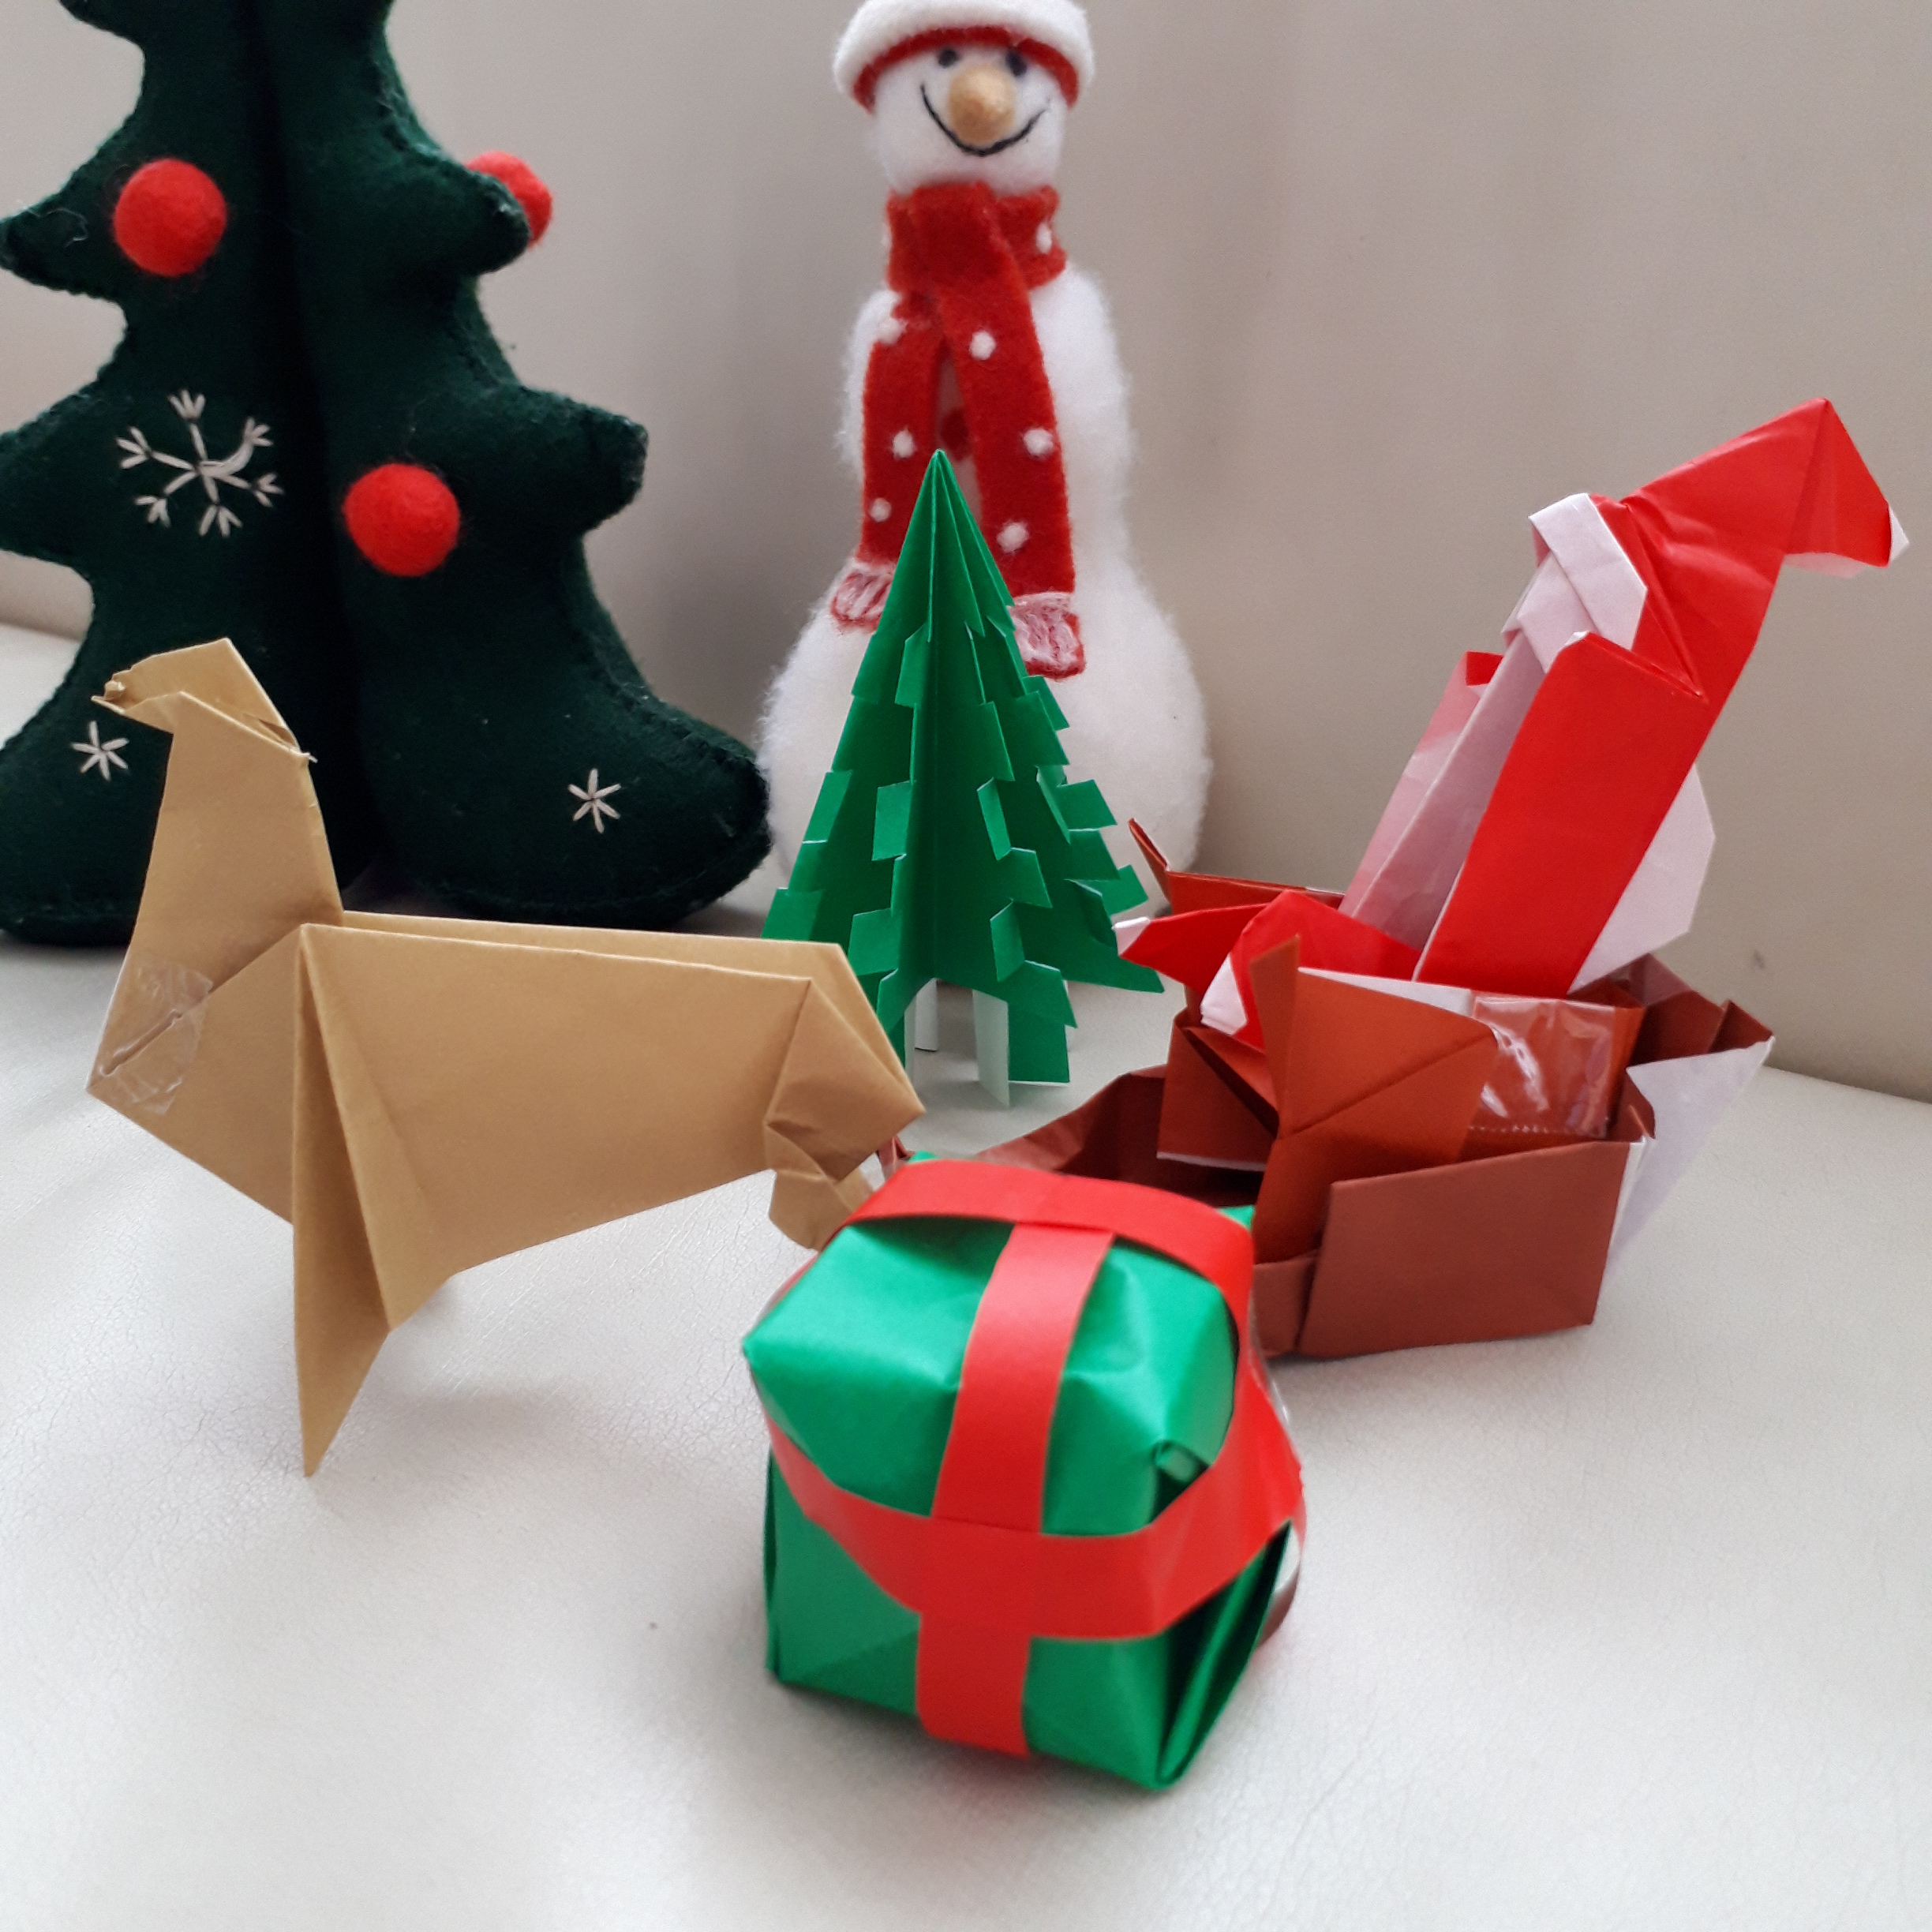 クリスマスの飾りを折り紙で立体的につくってみた サンタやトナカイも